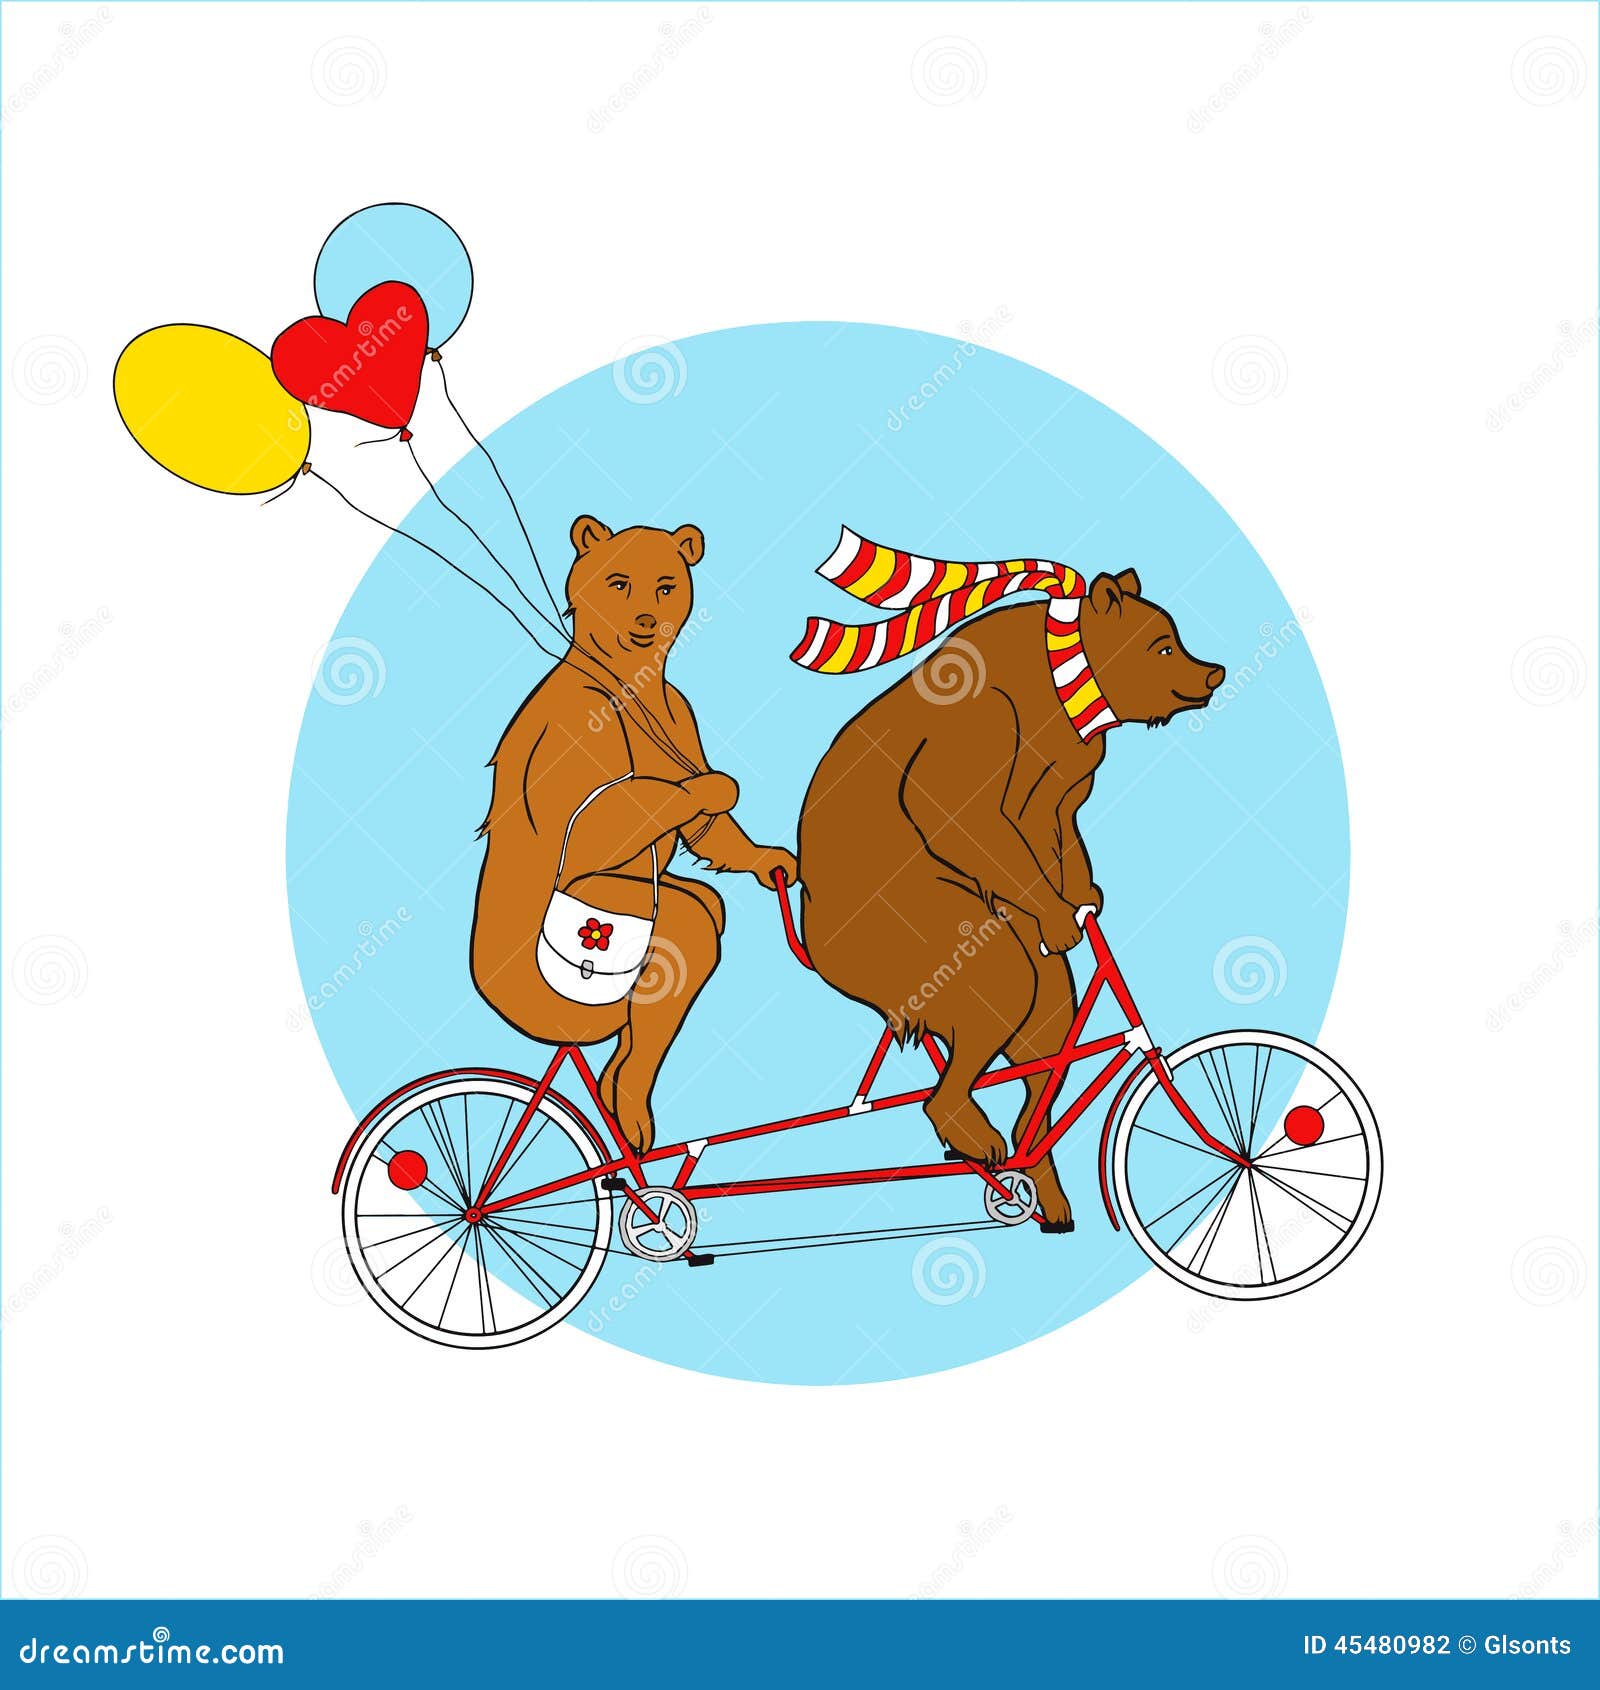 Ехали медведи на велосипеде ремикс. Медведь на велосипеде. Мишка на велосипеде. Велосипед Медвежонок. Медведь на велосипеде для детей.